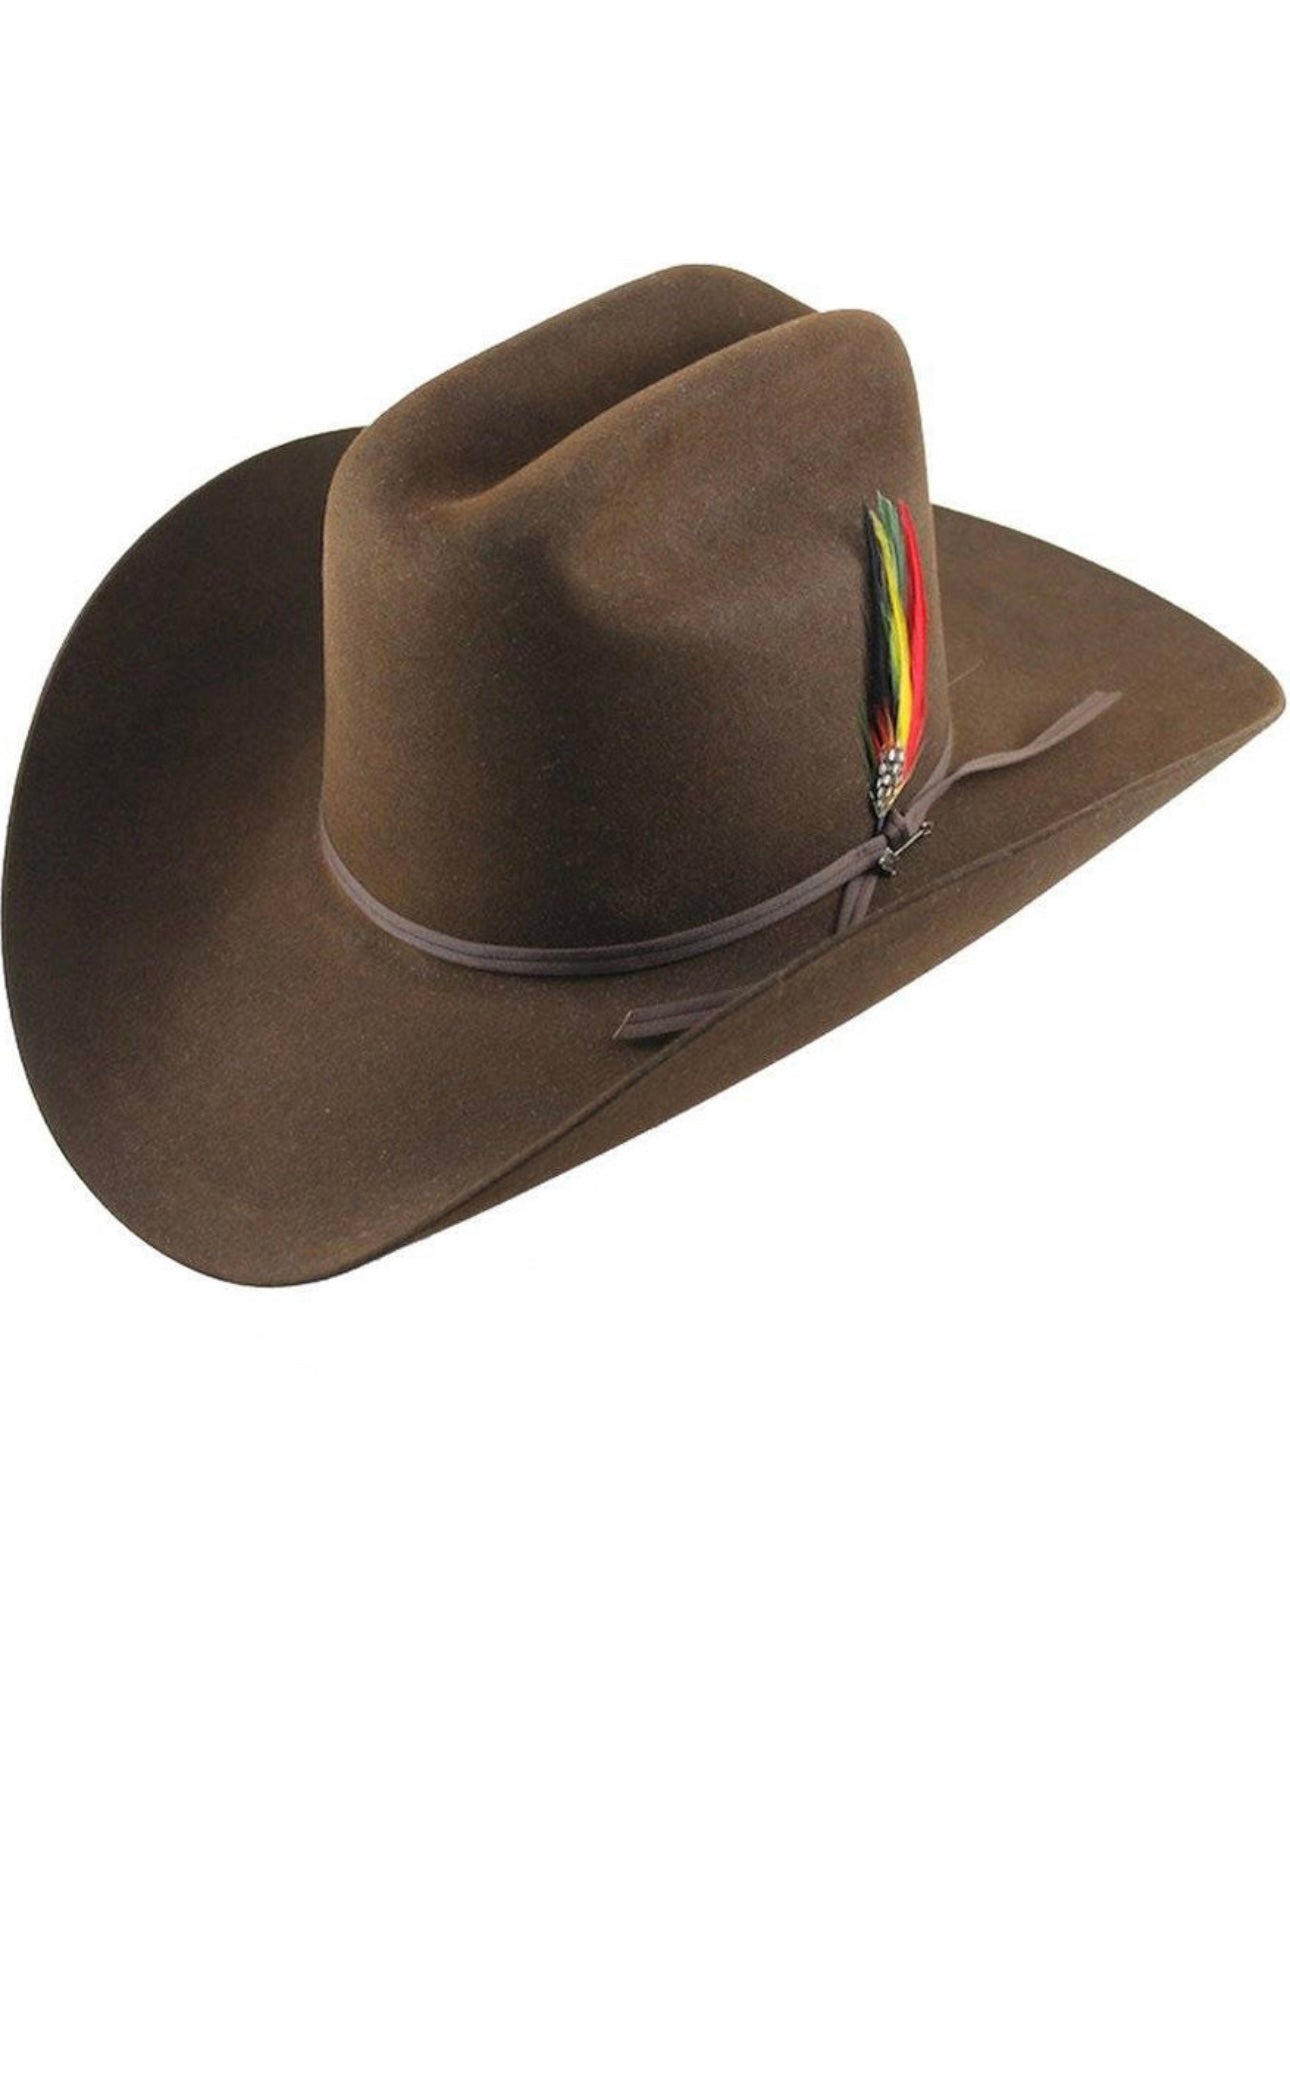 STETSON 6X “Rancher” Chocalate Felt Hat